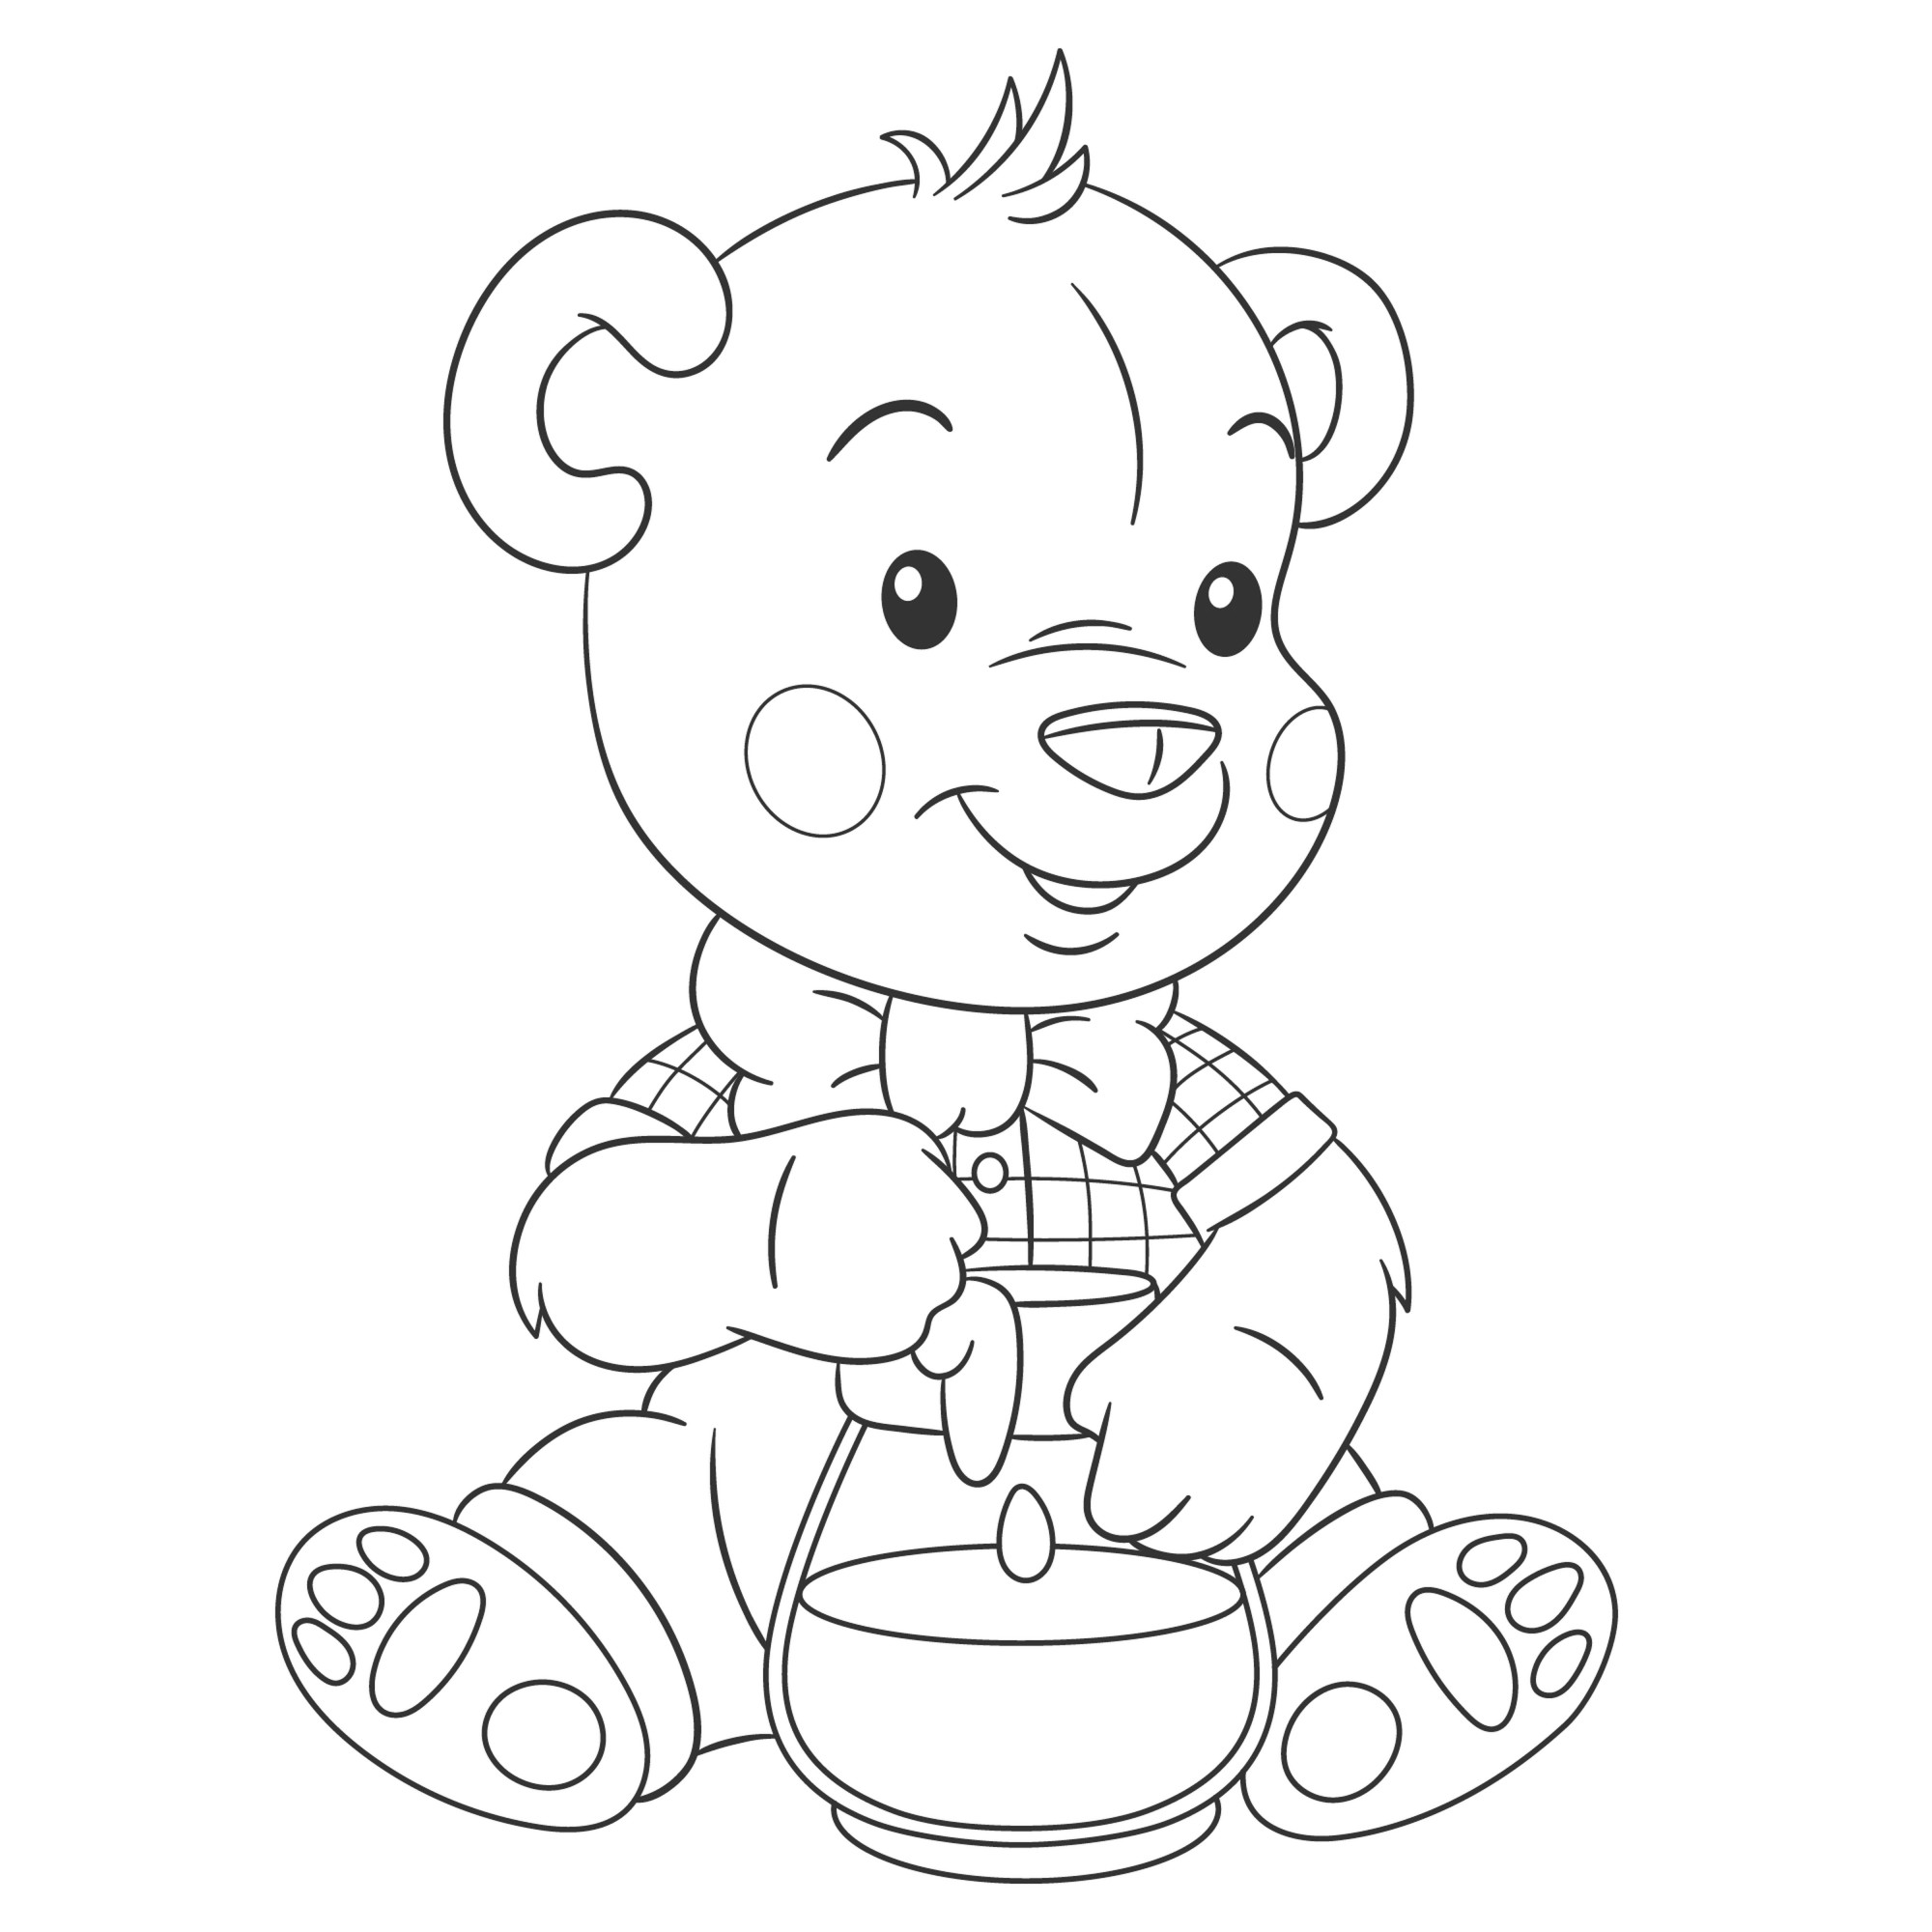 Раскраска для детей: мультяшный медведь с банкой меда